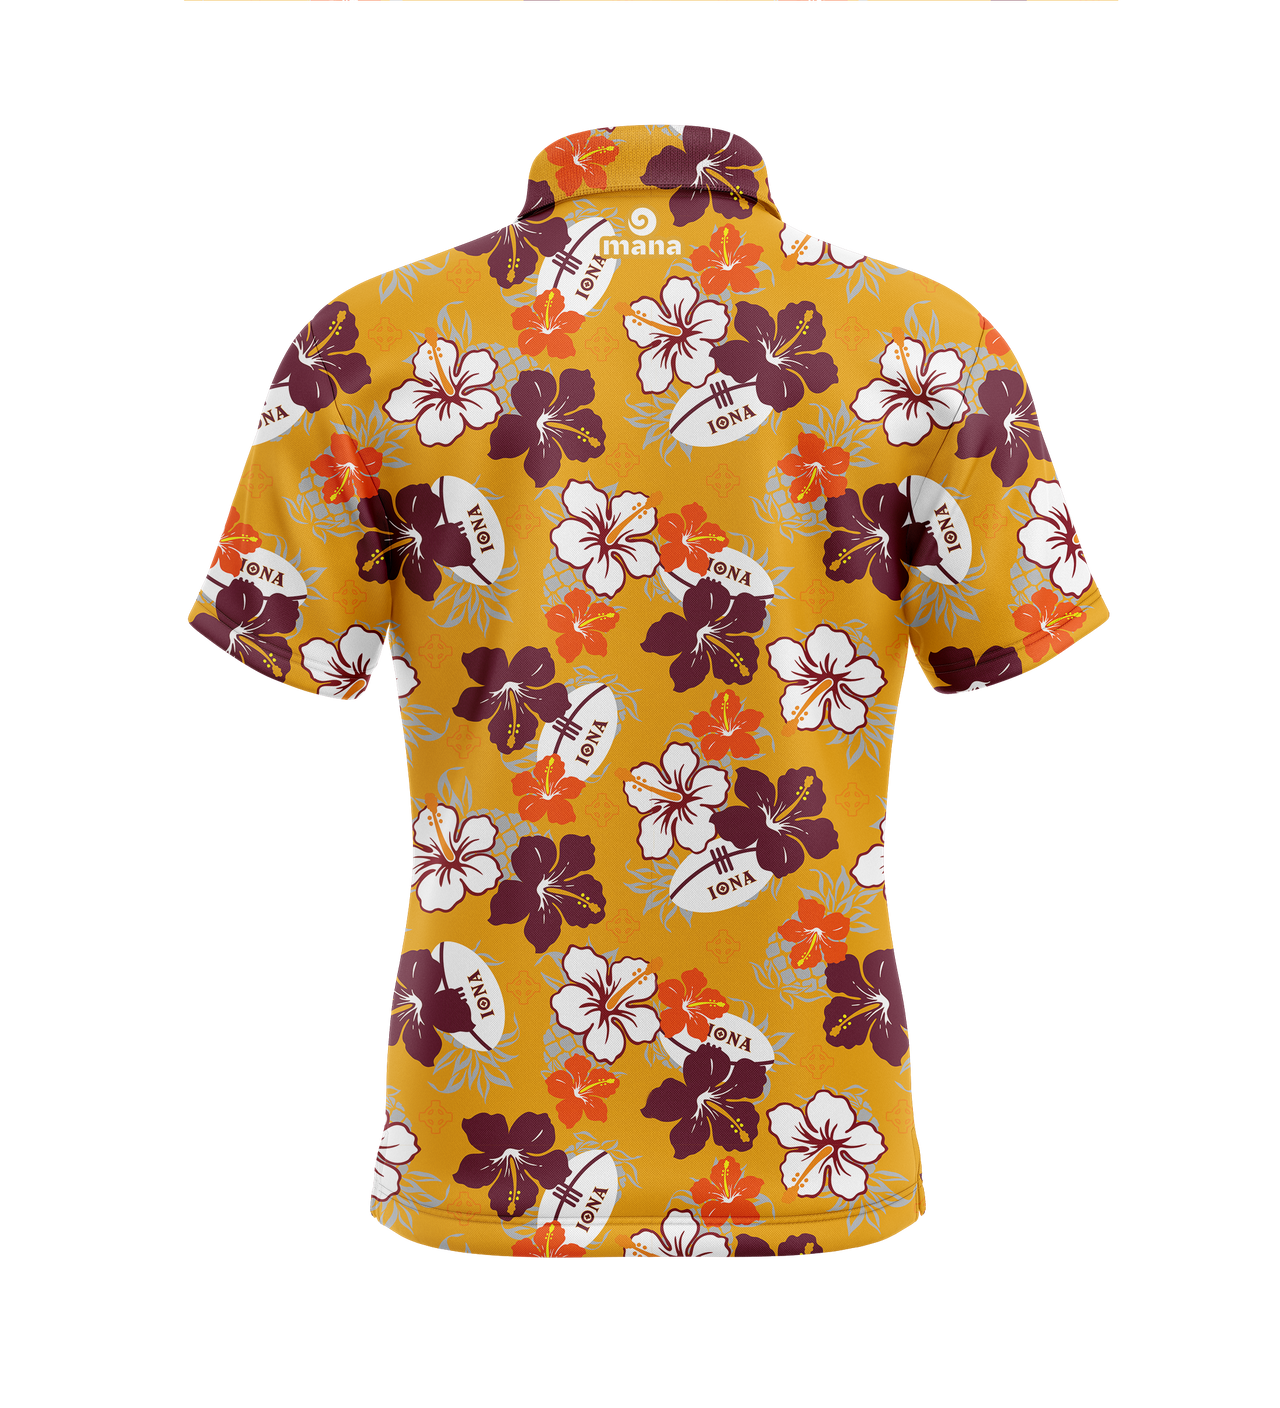 Camiseta hawaiana Iona Rugby